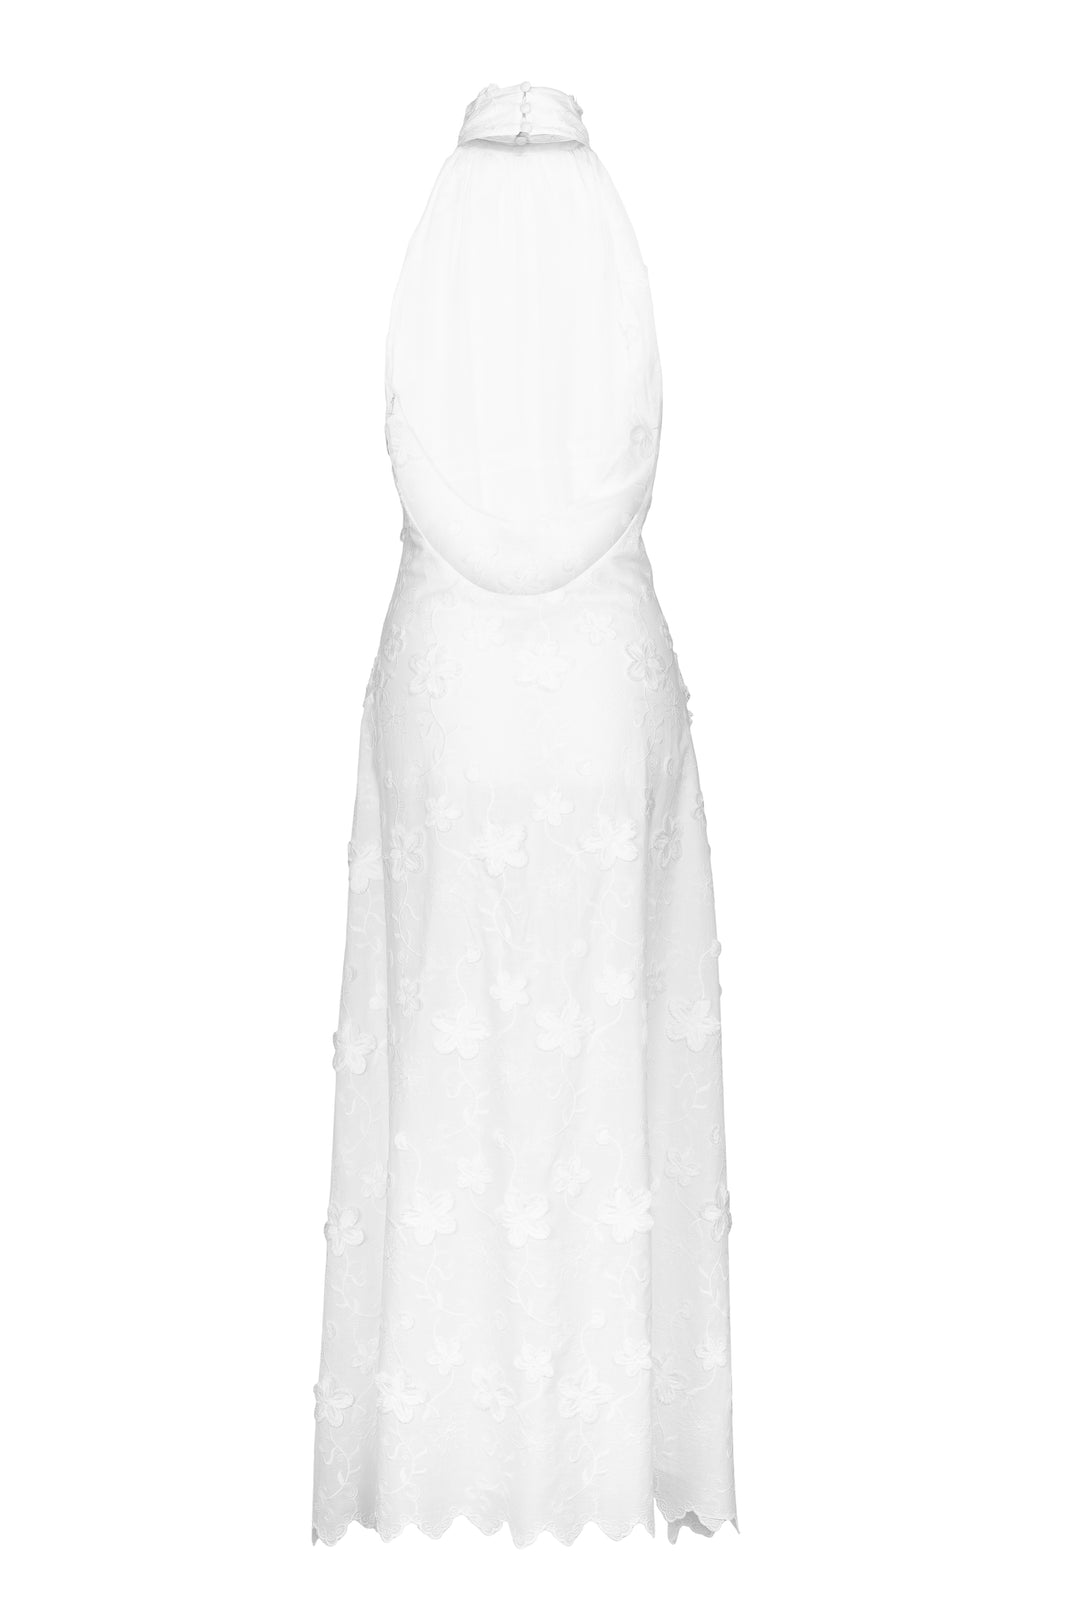 Lupita Maxi Dress White Embroidery